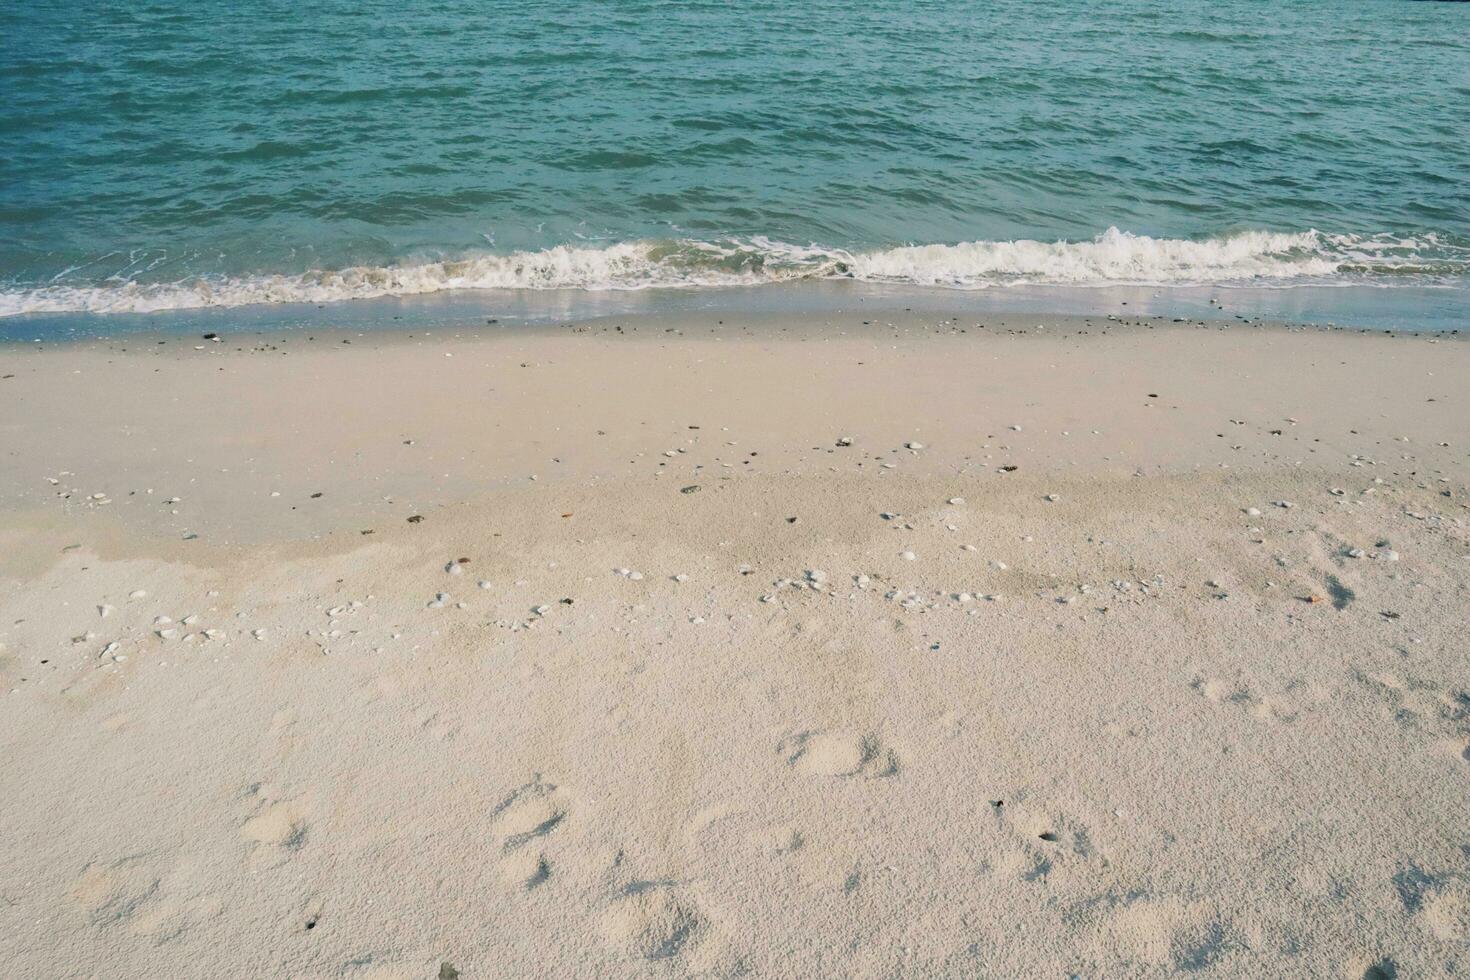 Fußabdrücke im das Sand, Land scape von Strand und Meer, Blau Welle und Weiß Sand foto